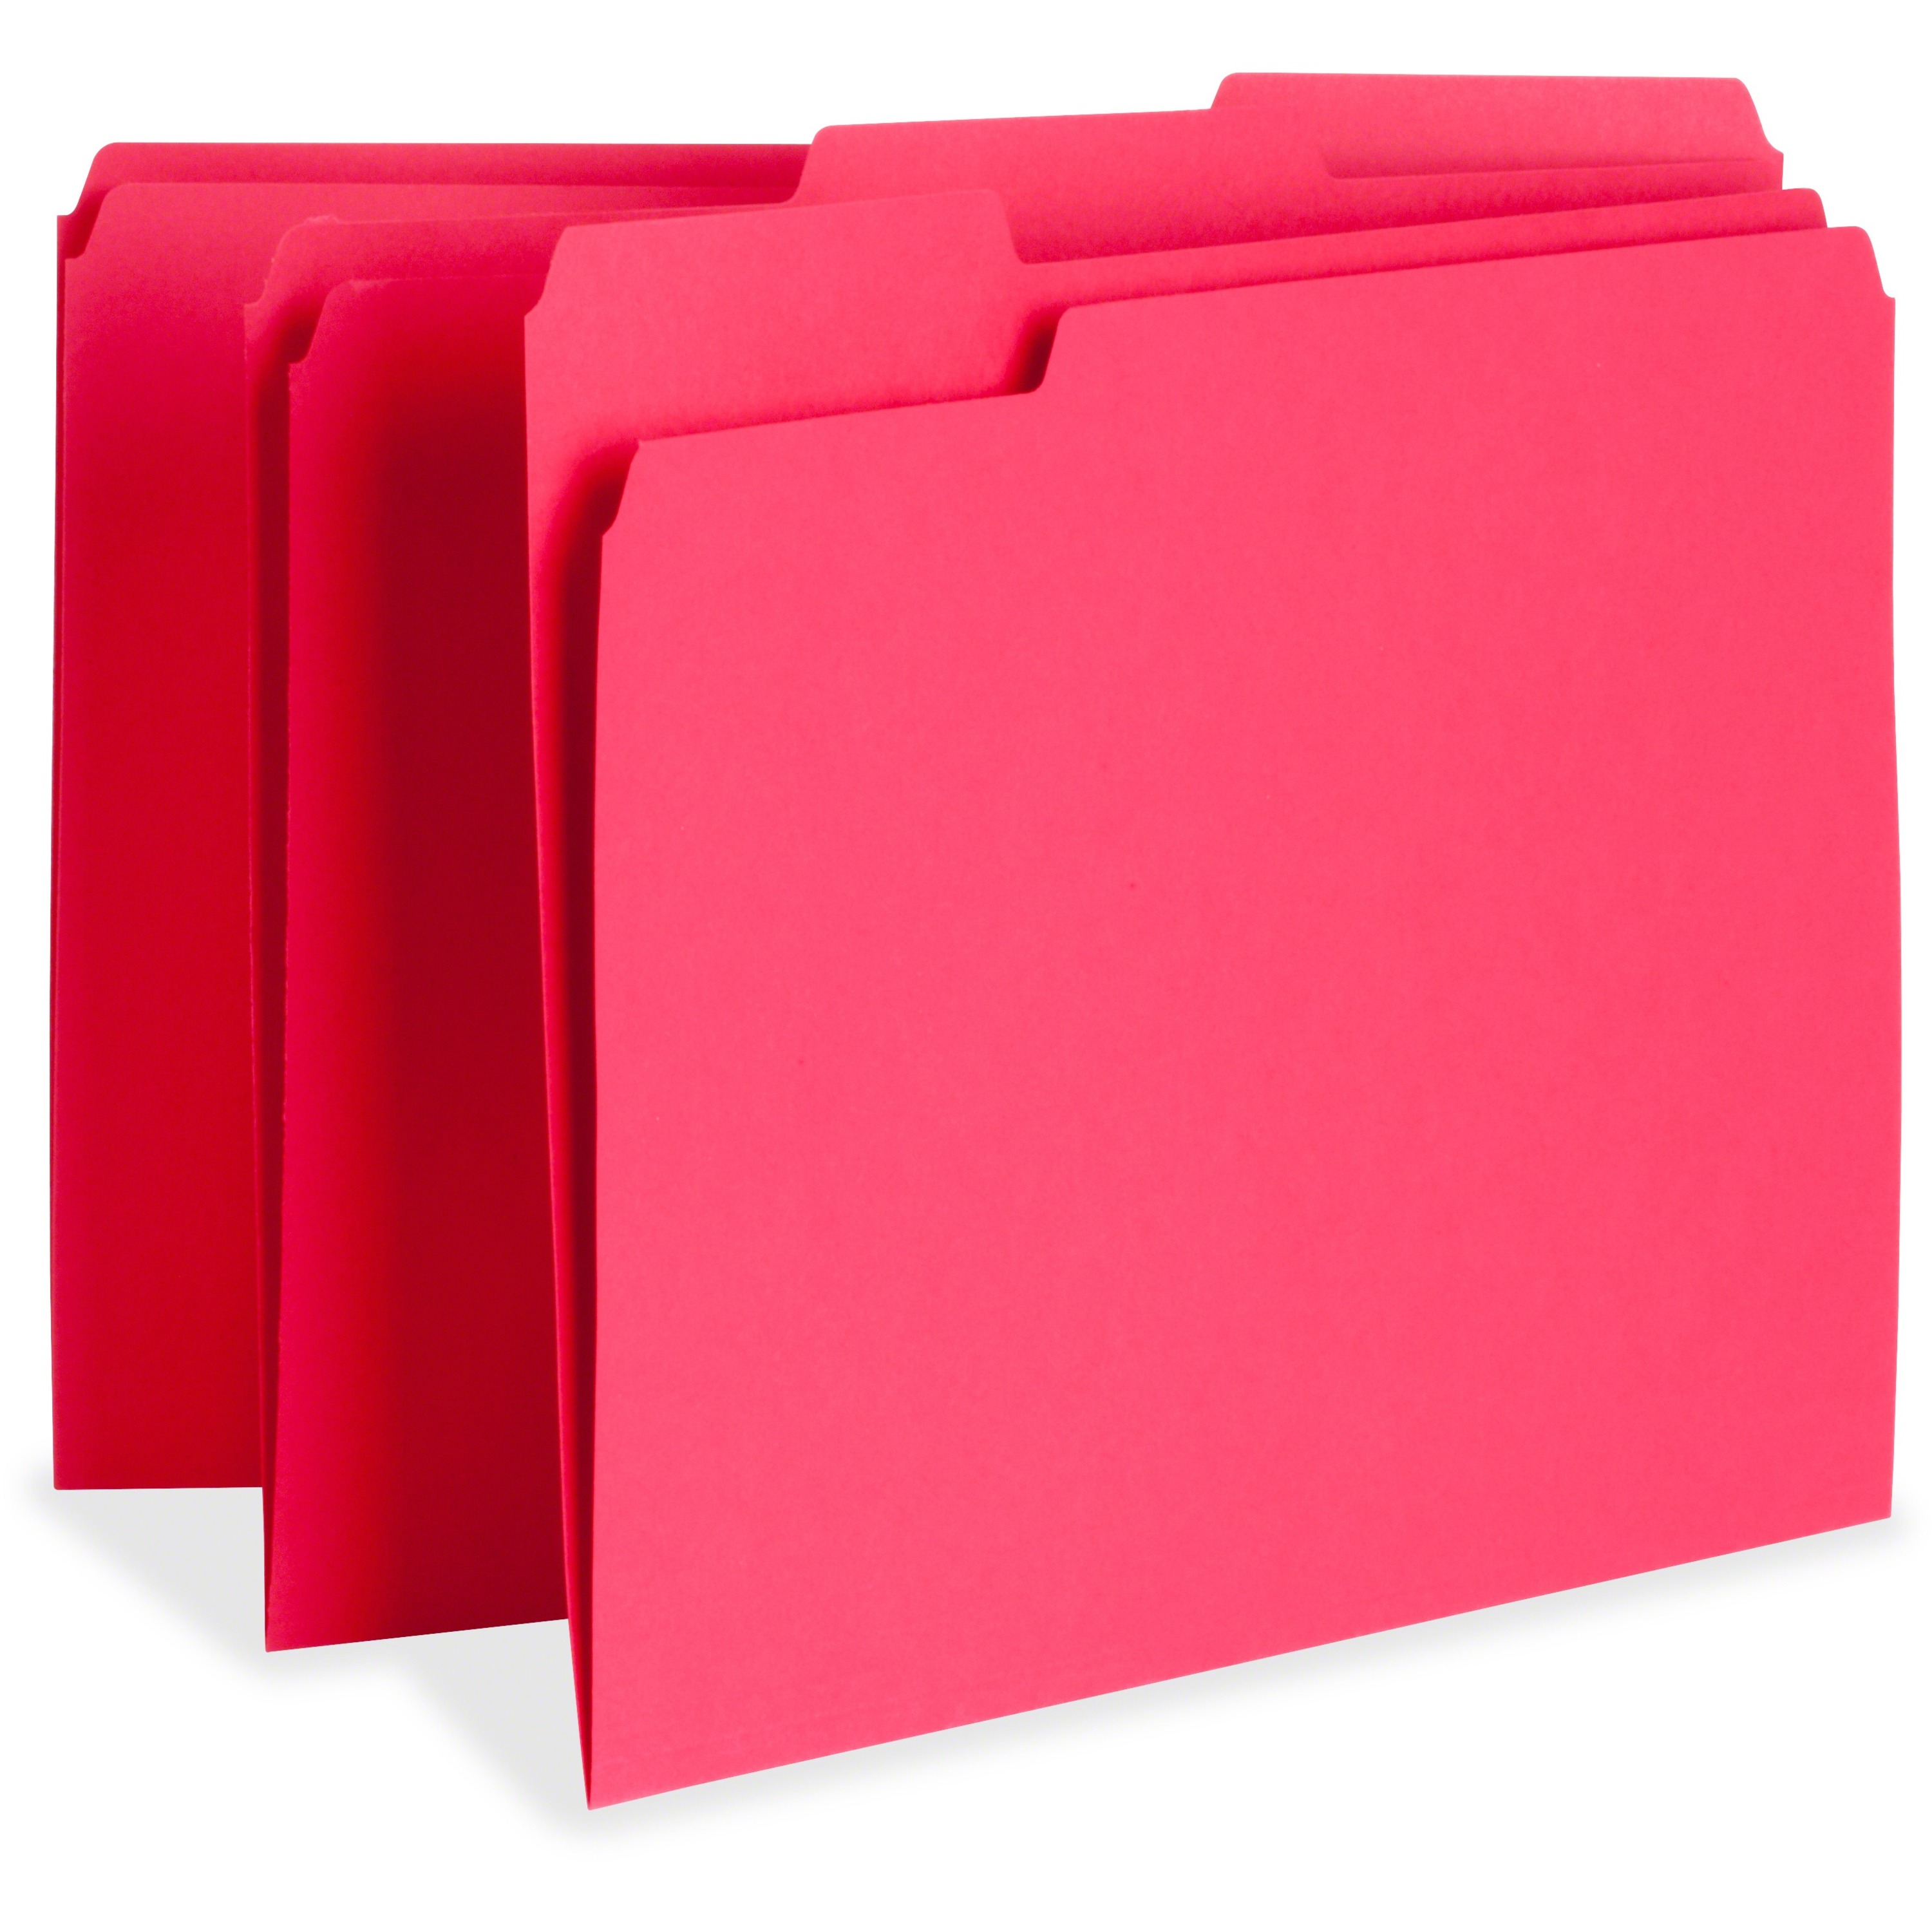 Мат складной Color folder. File folder. Лента для цветового кодирования для папок в архиве. Actual file folders.